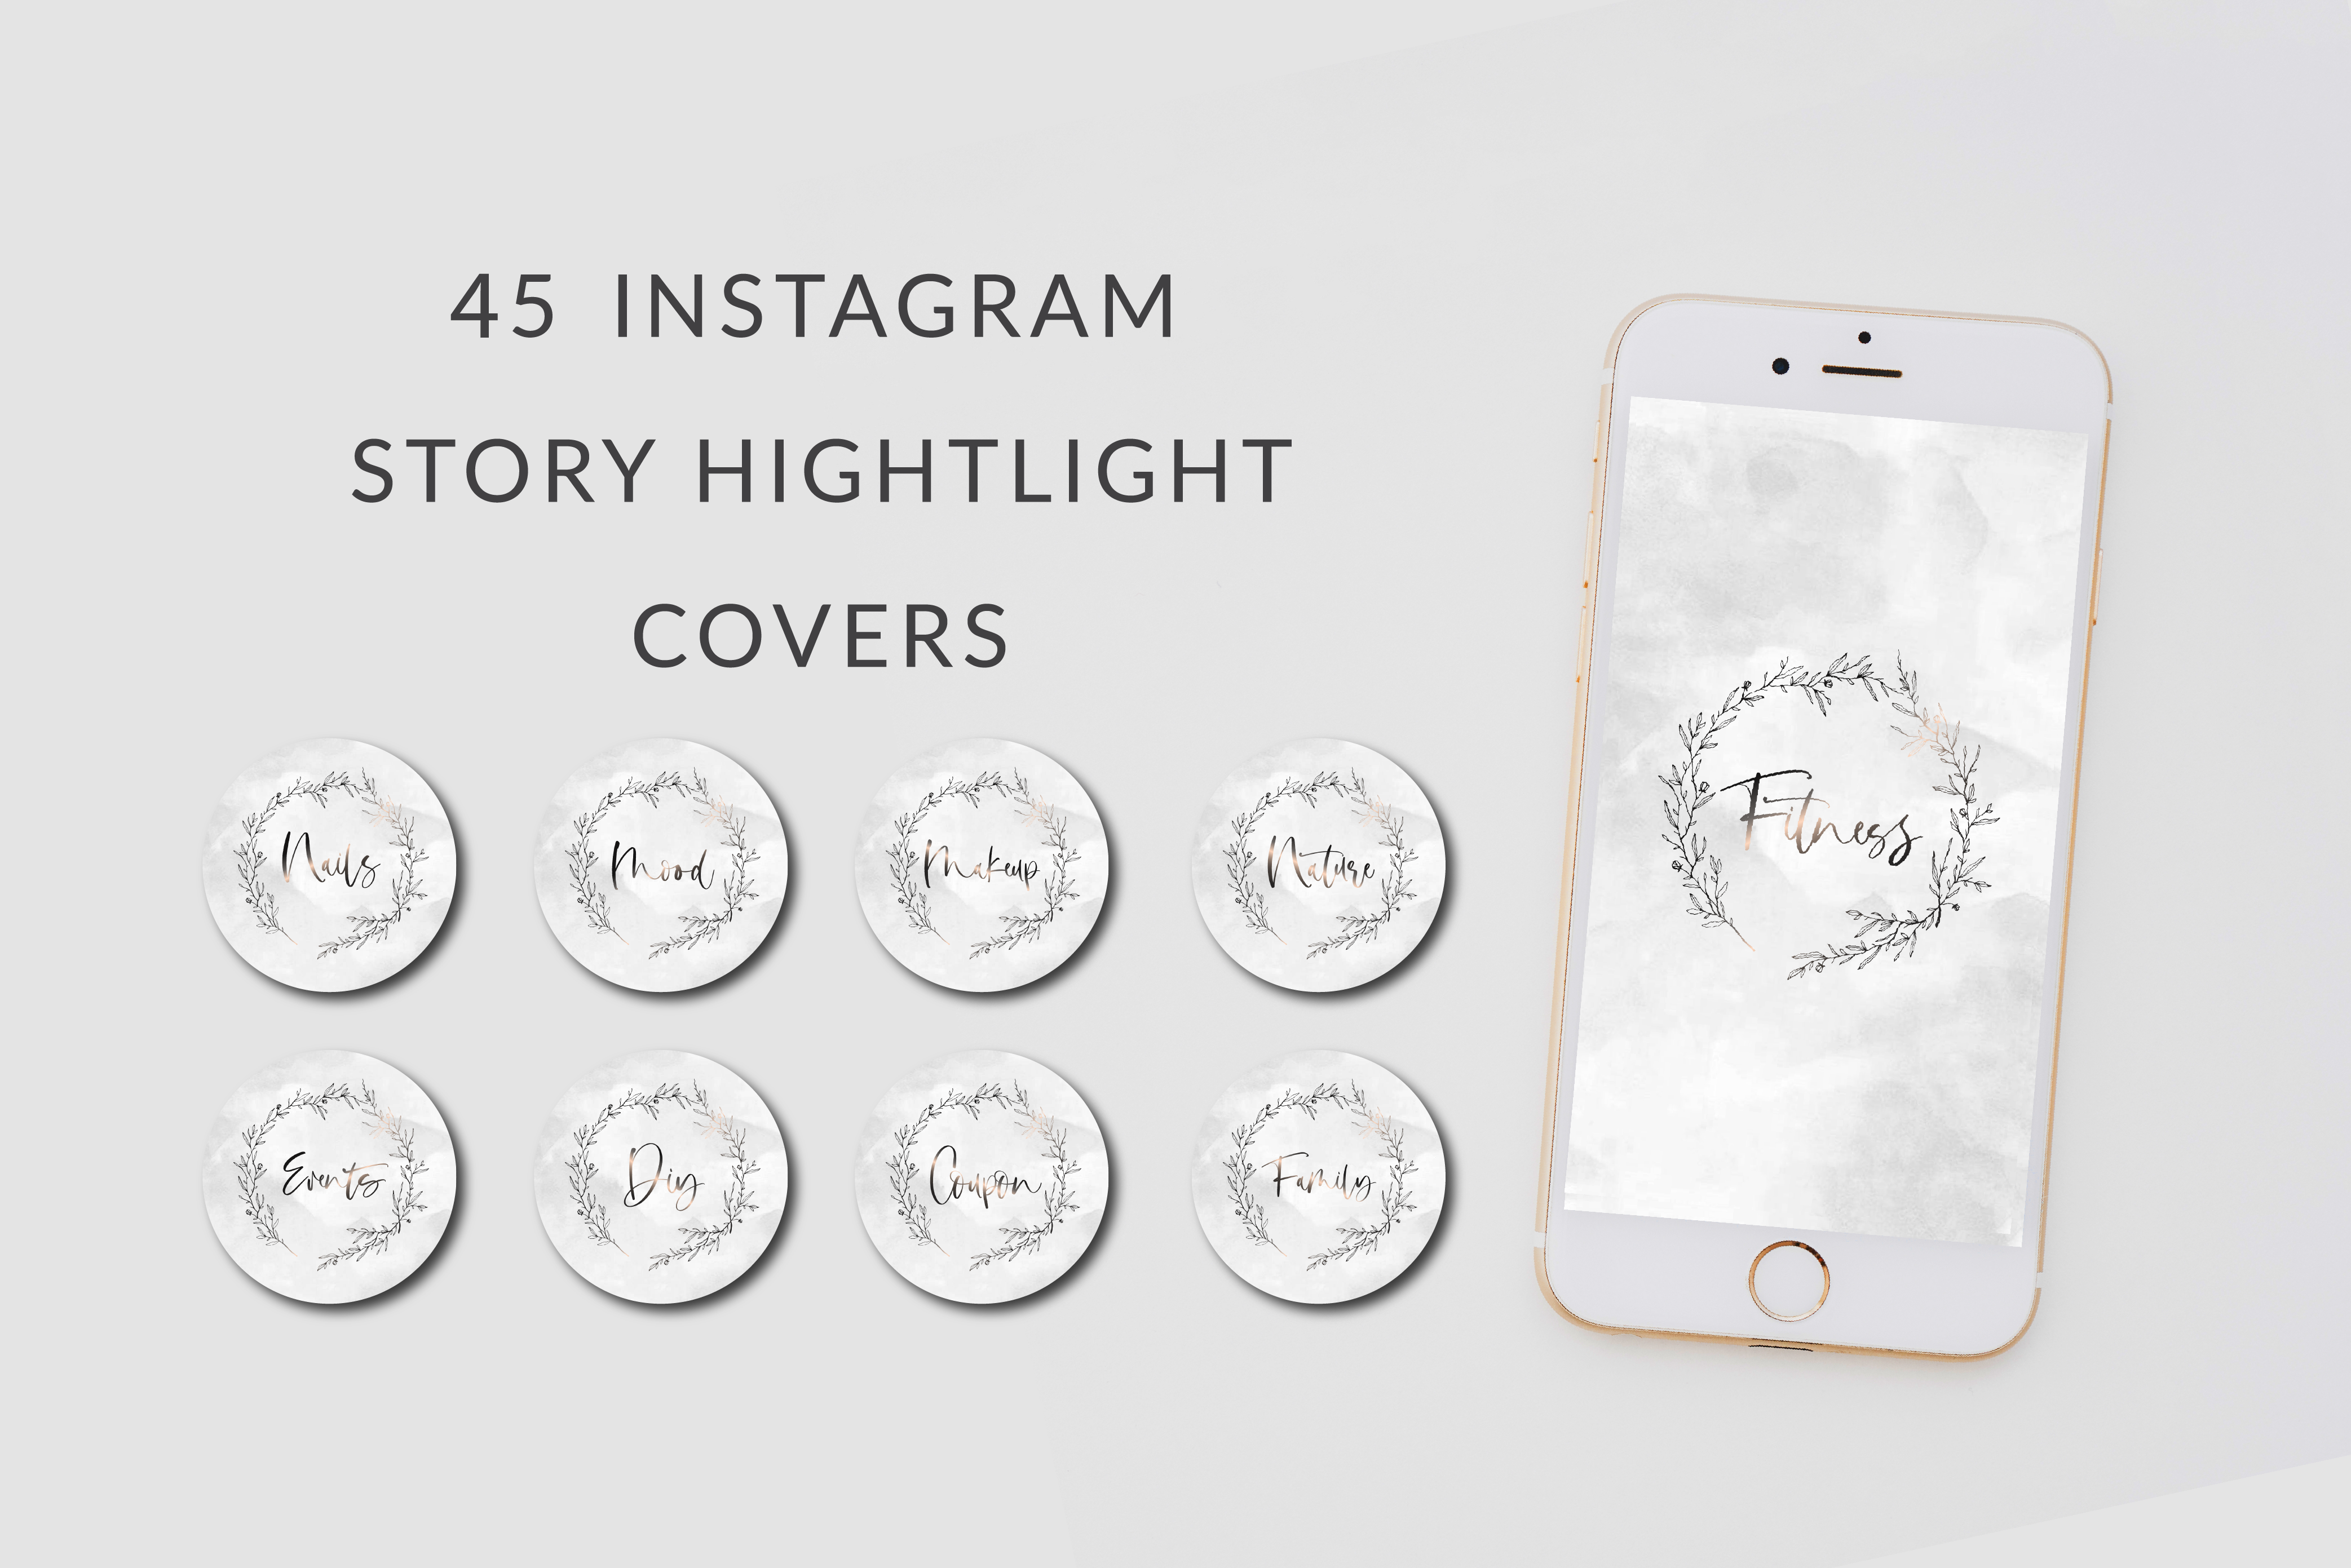 Jessica Instagram Story Covers , , - peachcreme.com